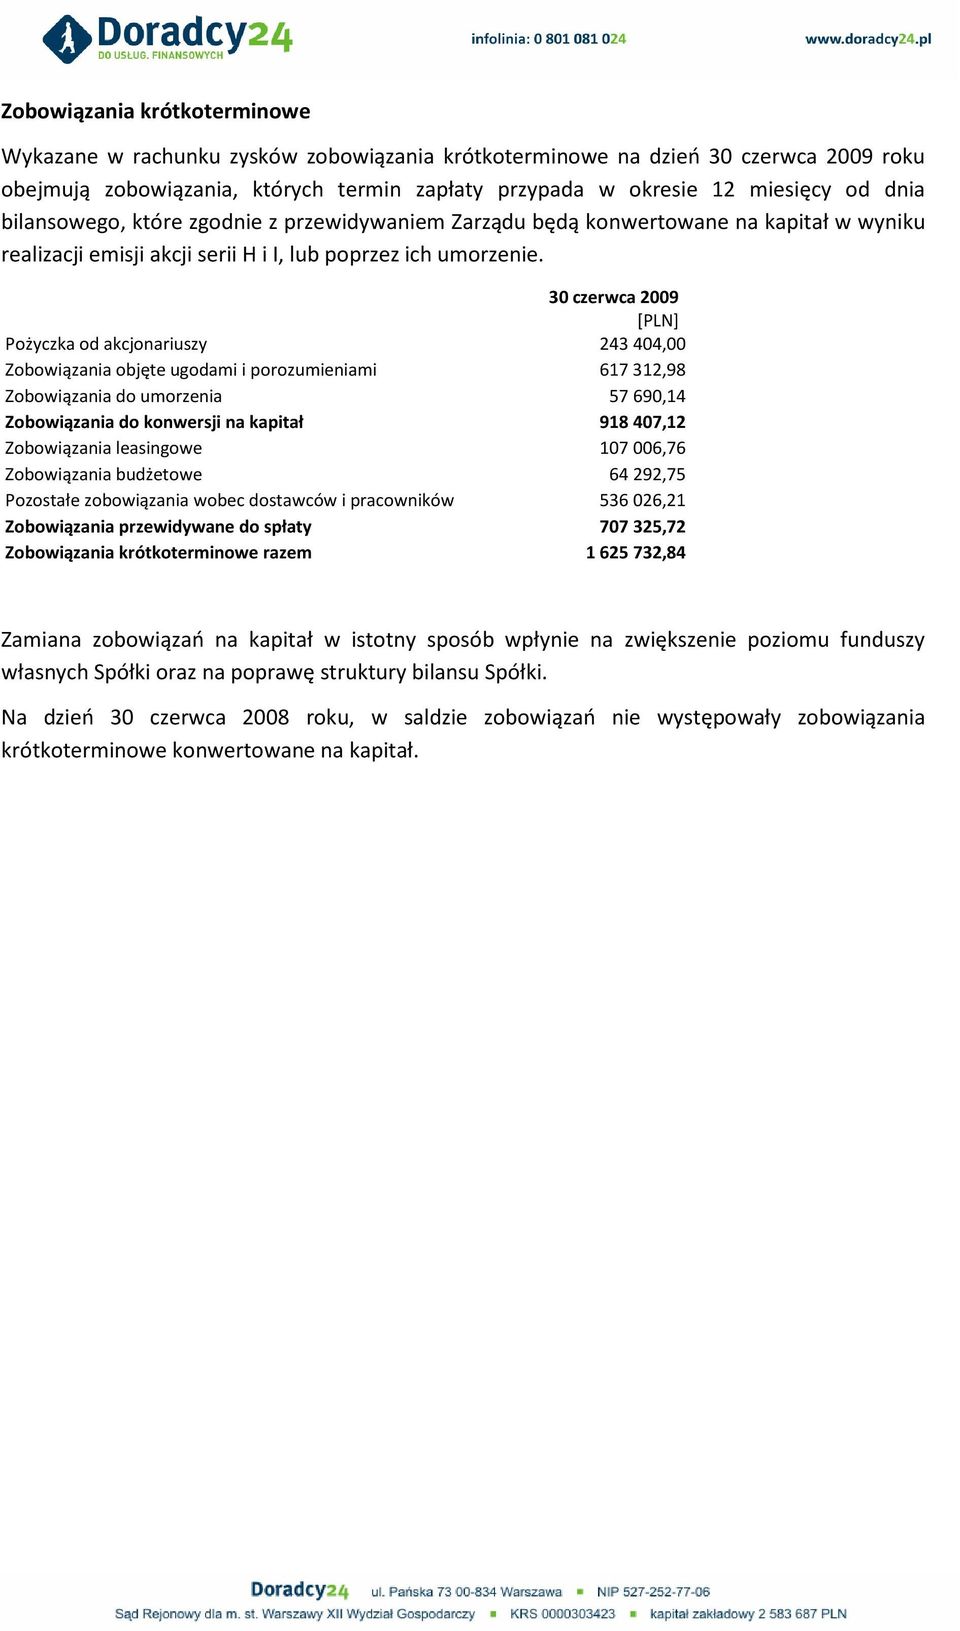 30 czerwca 2009 [PLN] Pożyczka od akcjonariuszy 243404,00 Zobowiązania objęte ugodami i porozumieniami 617312,98 Zobowiązania do umorzenia 57690,14 Zobowiązania do konwersji na kapitał 918407,12